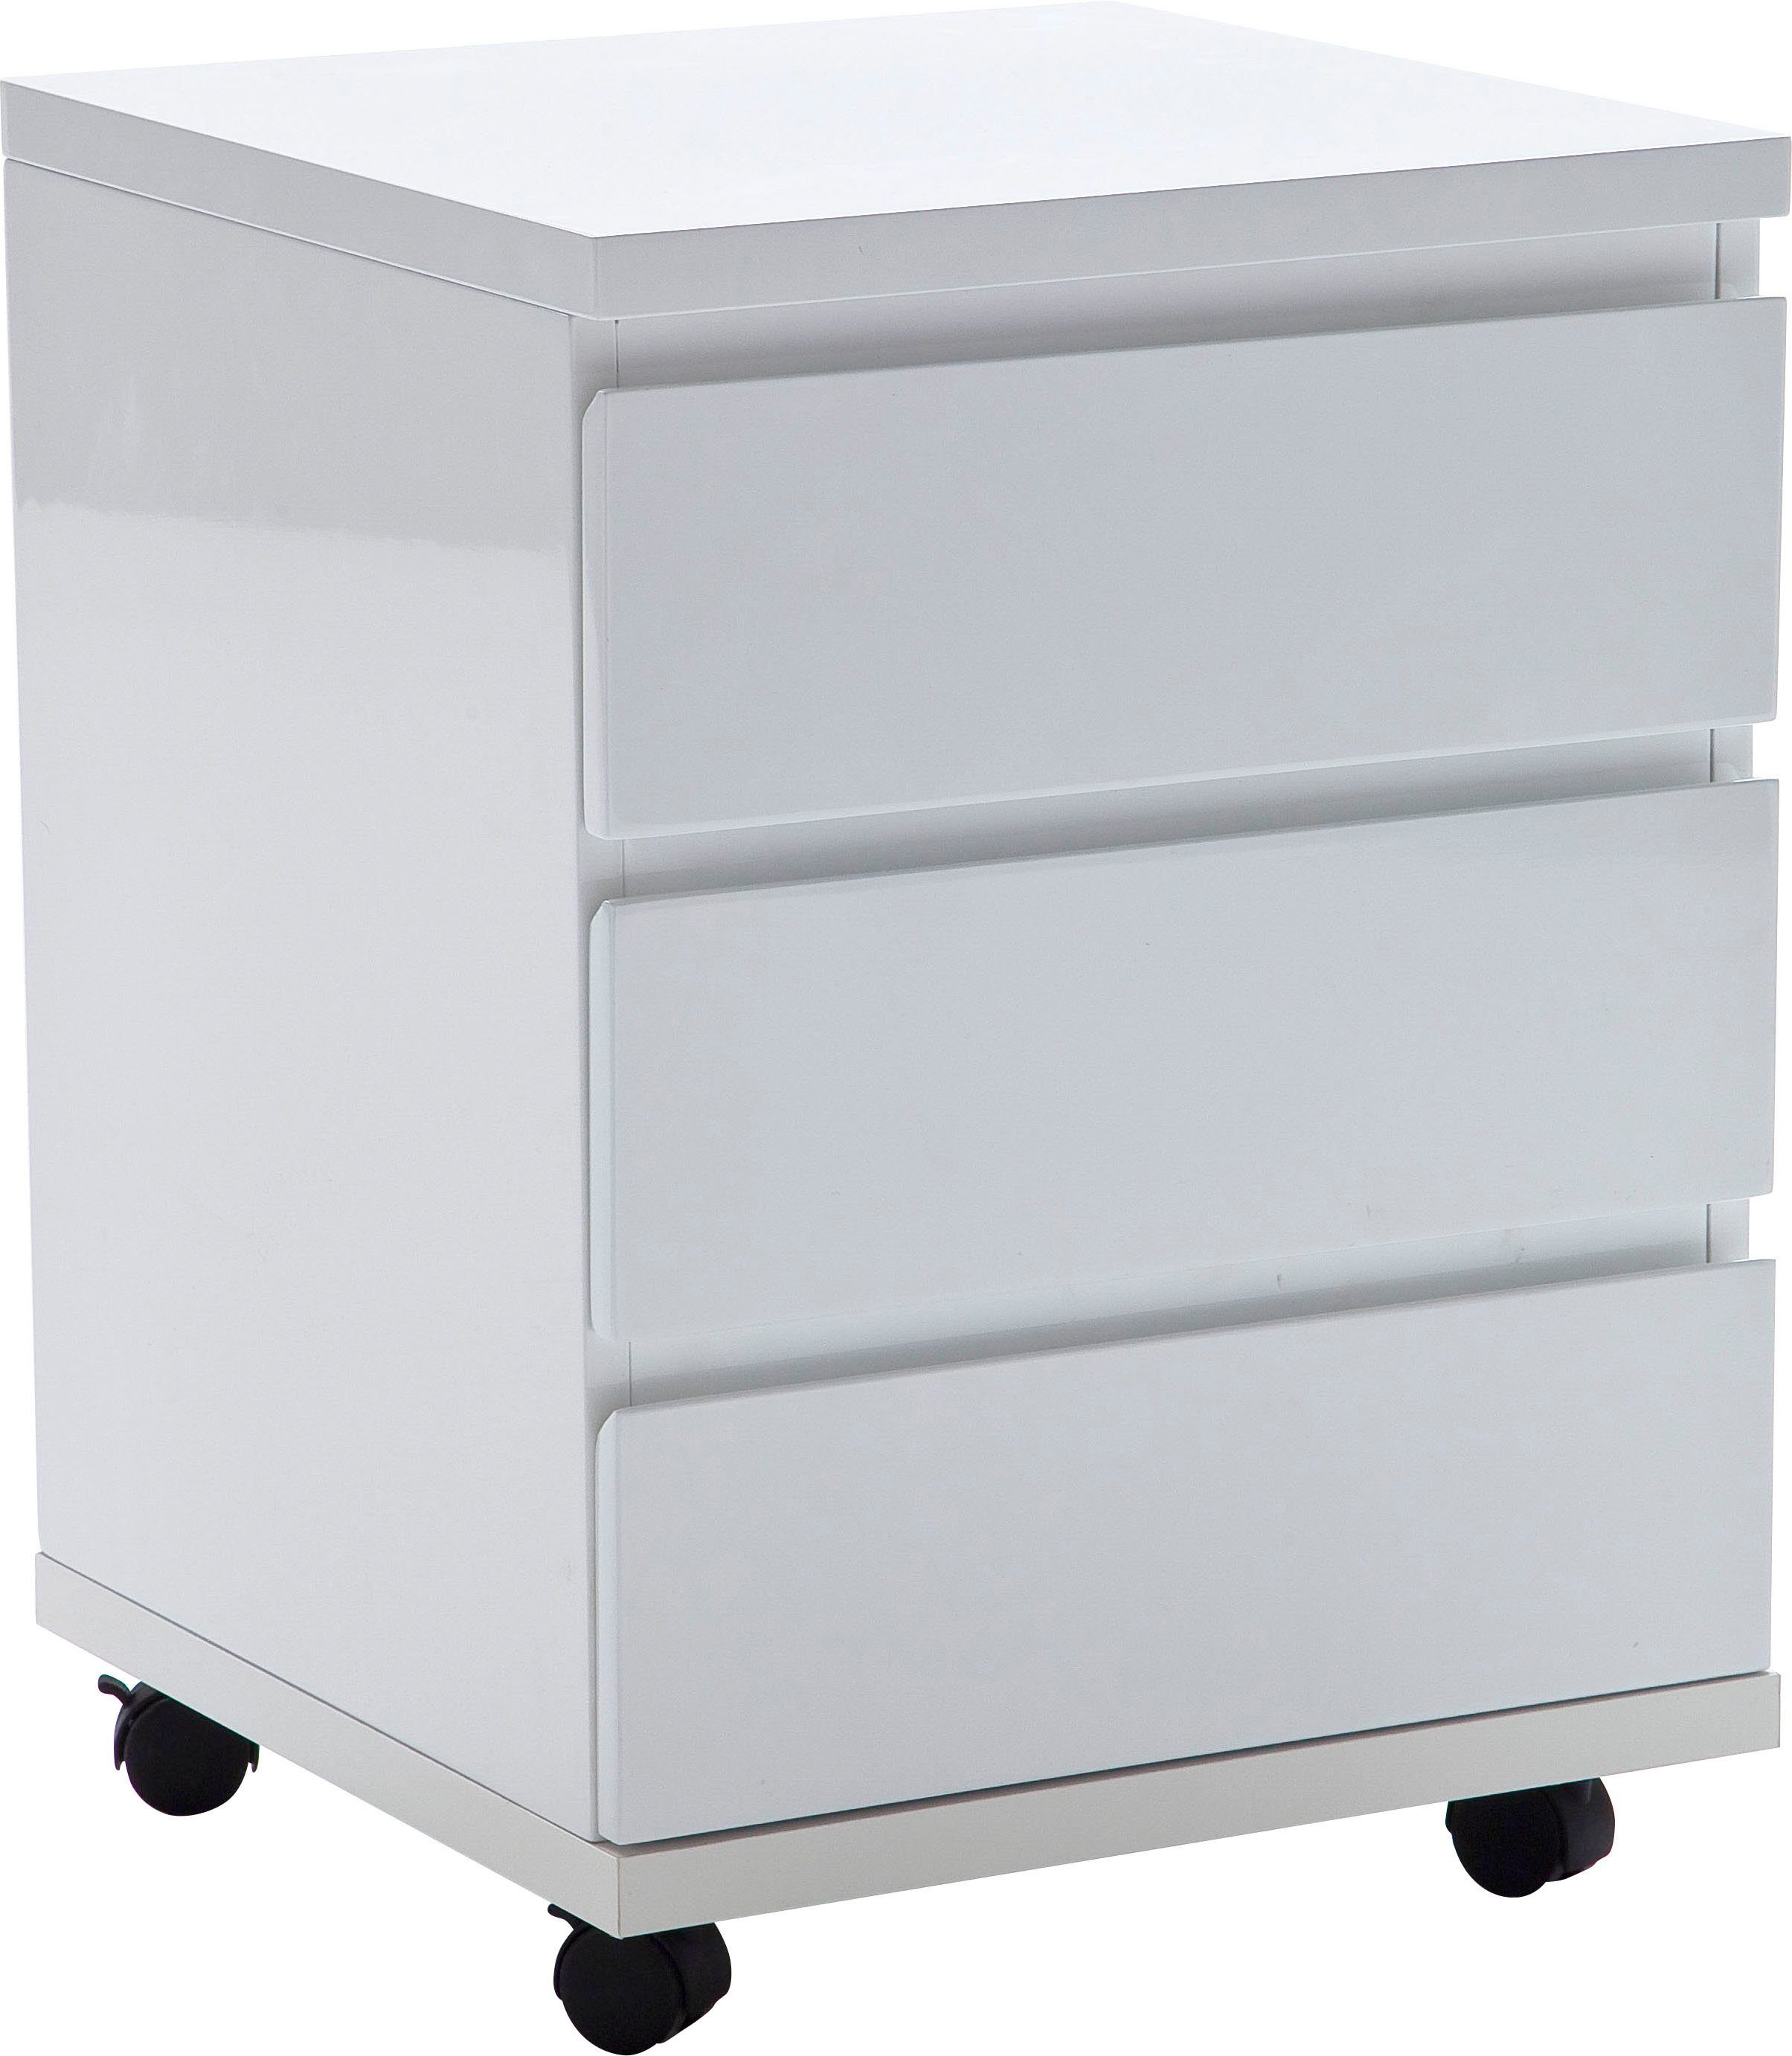 MCA furniture Rollcontainer RC, Büroschrank rollbar, weiß hochglanz | Rollcontainer